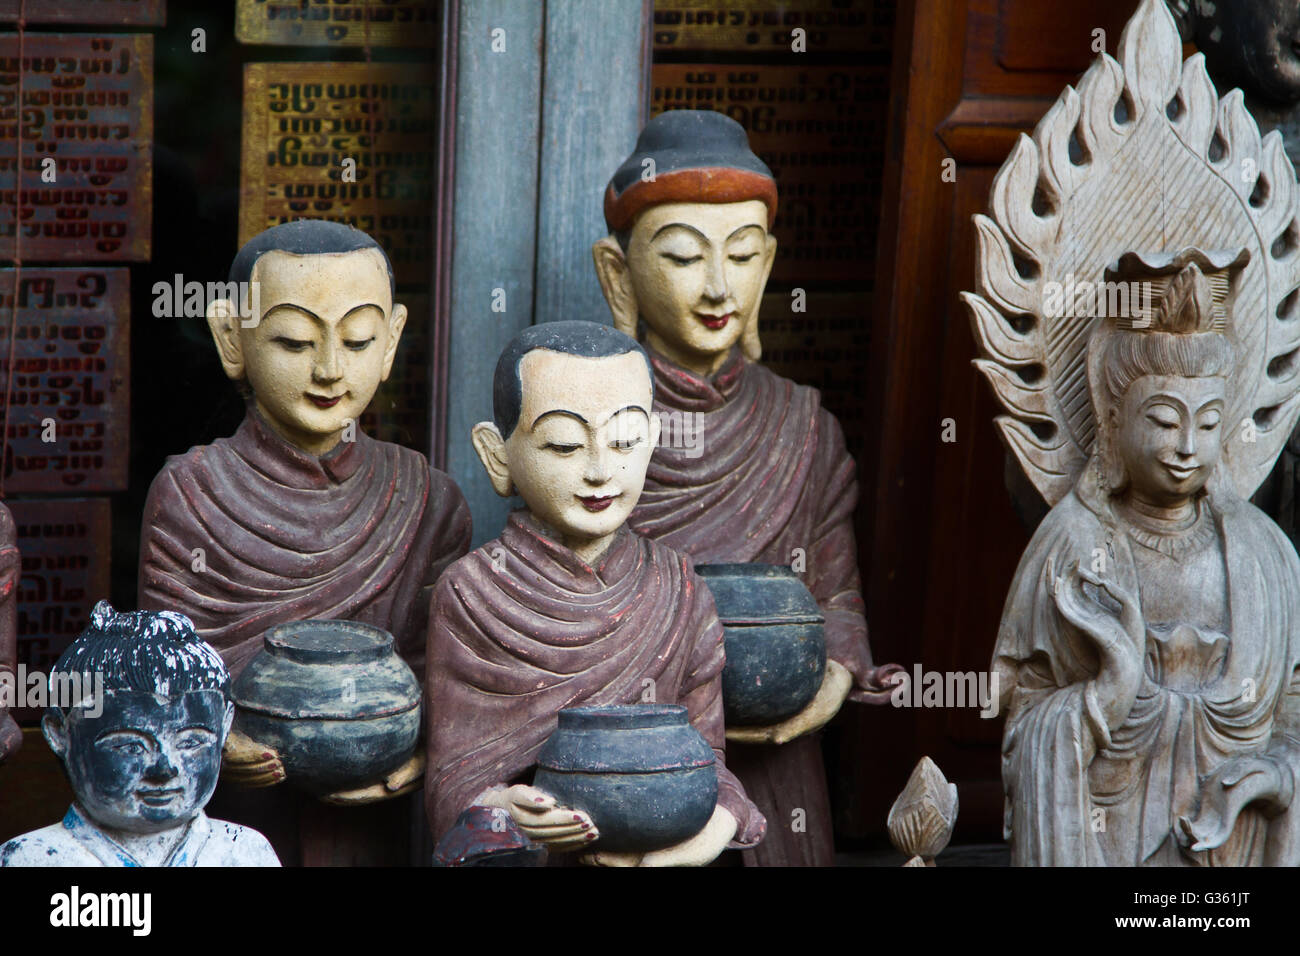 Mönch-Figuren und Objekte in einem Geschäft in Bangkok Thailand Stockfoto